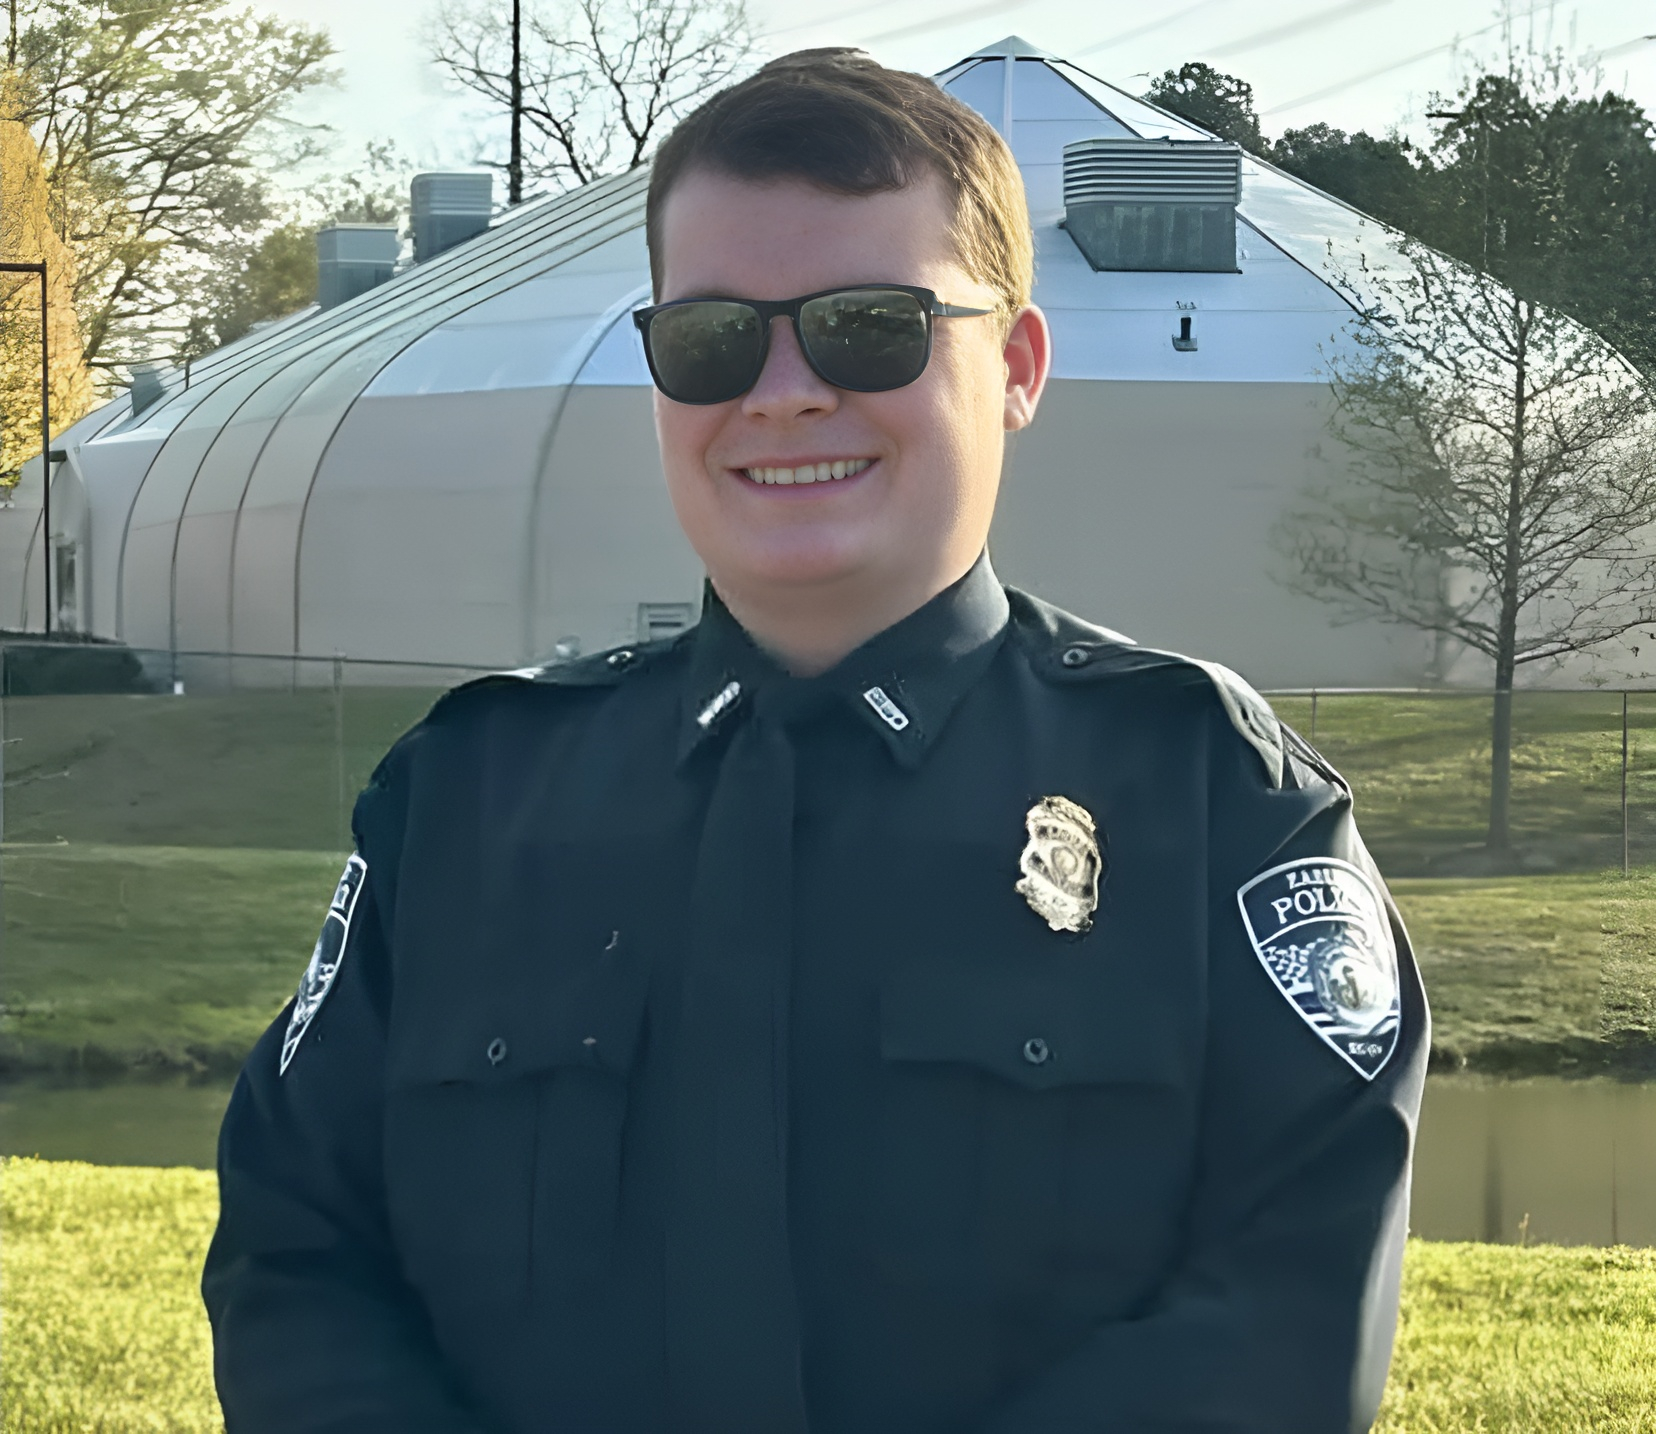 Officer Matthew Hare